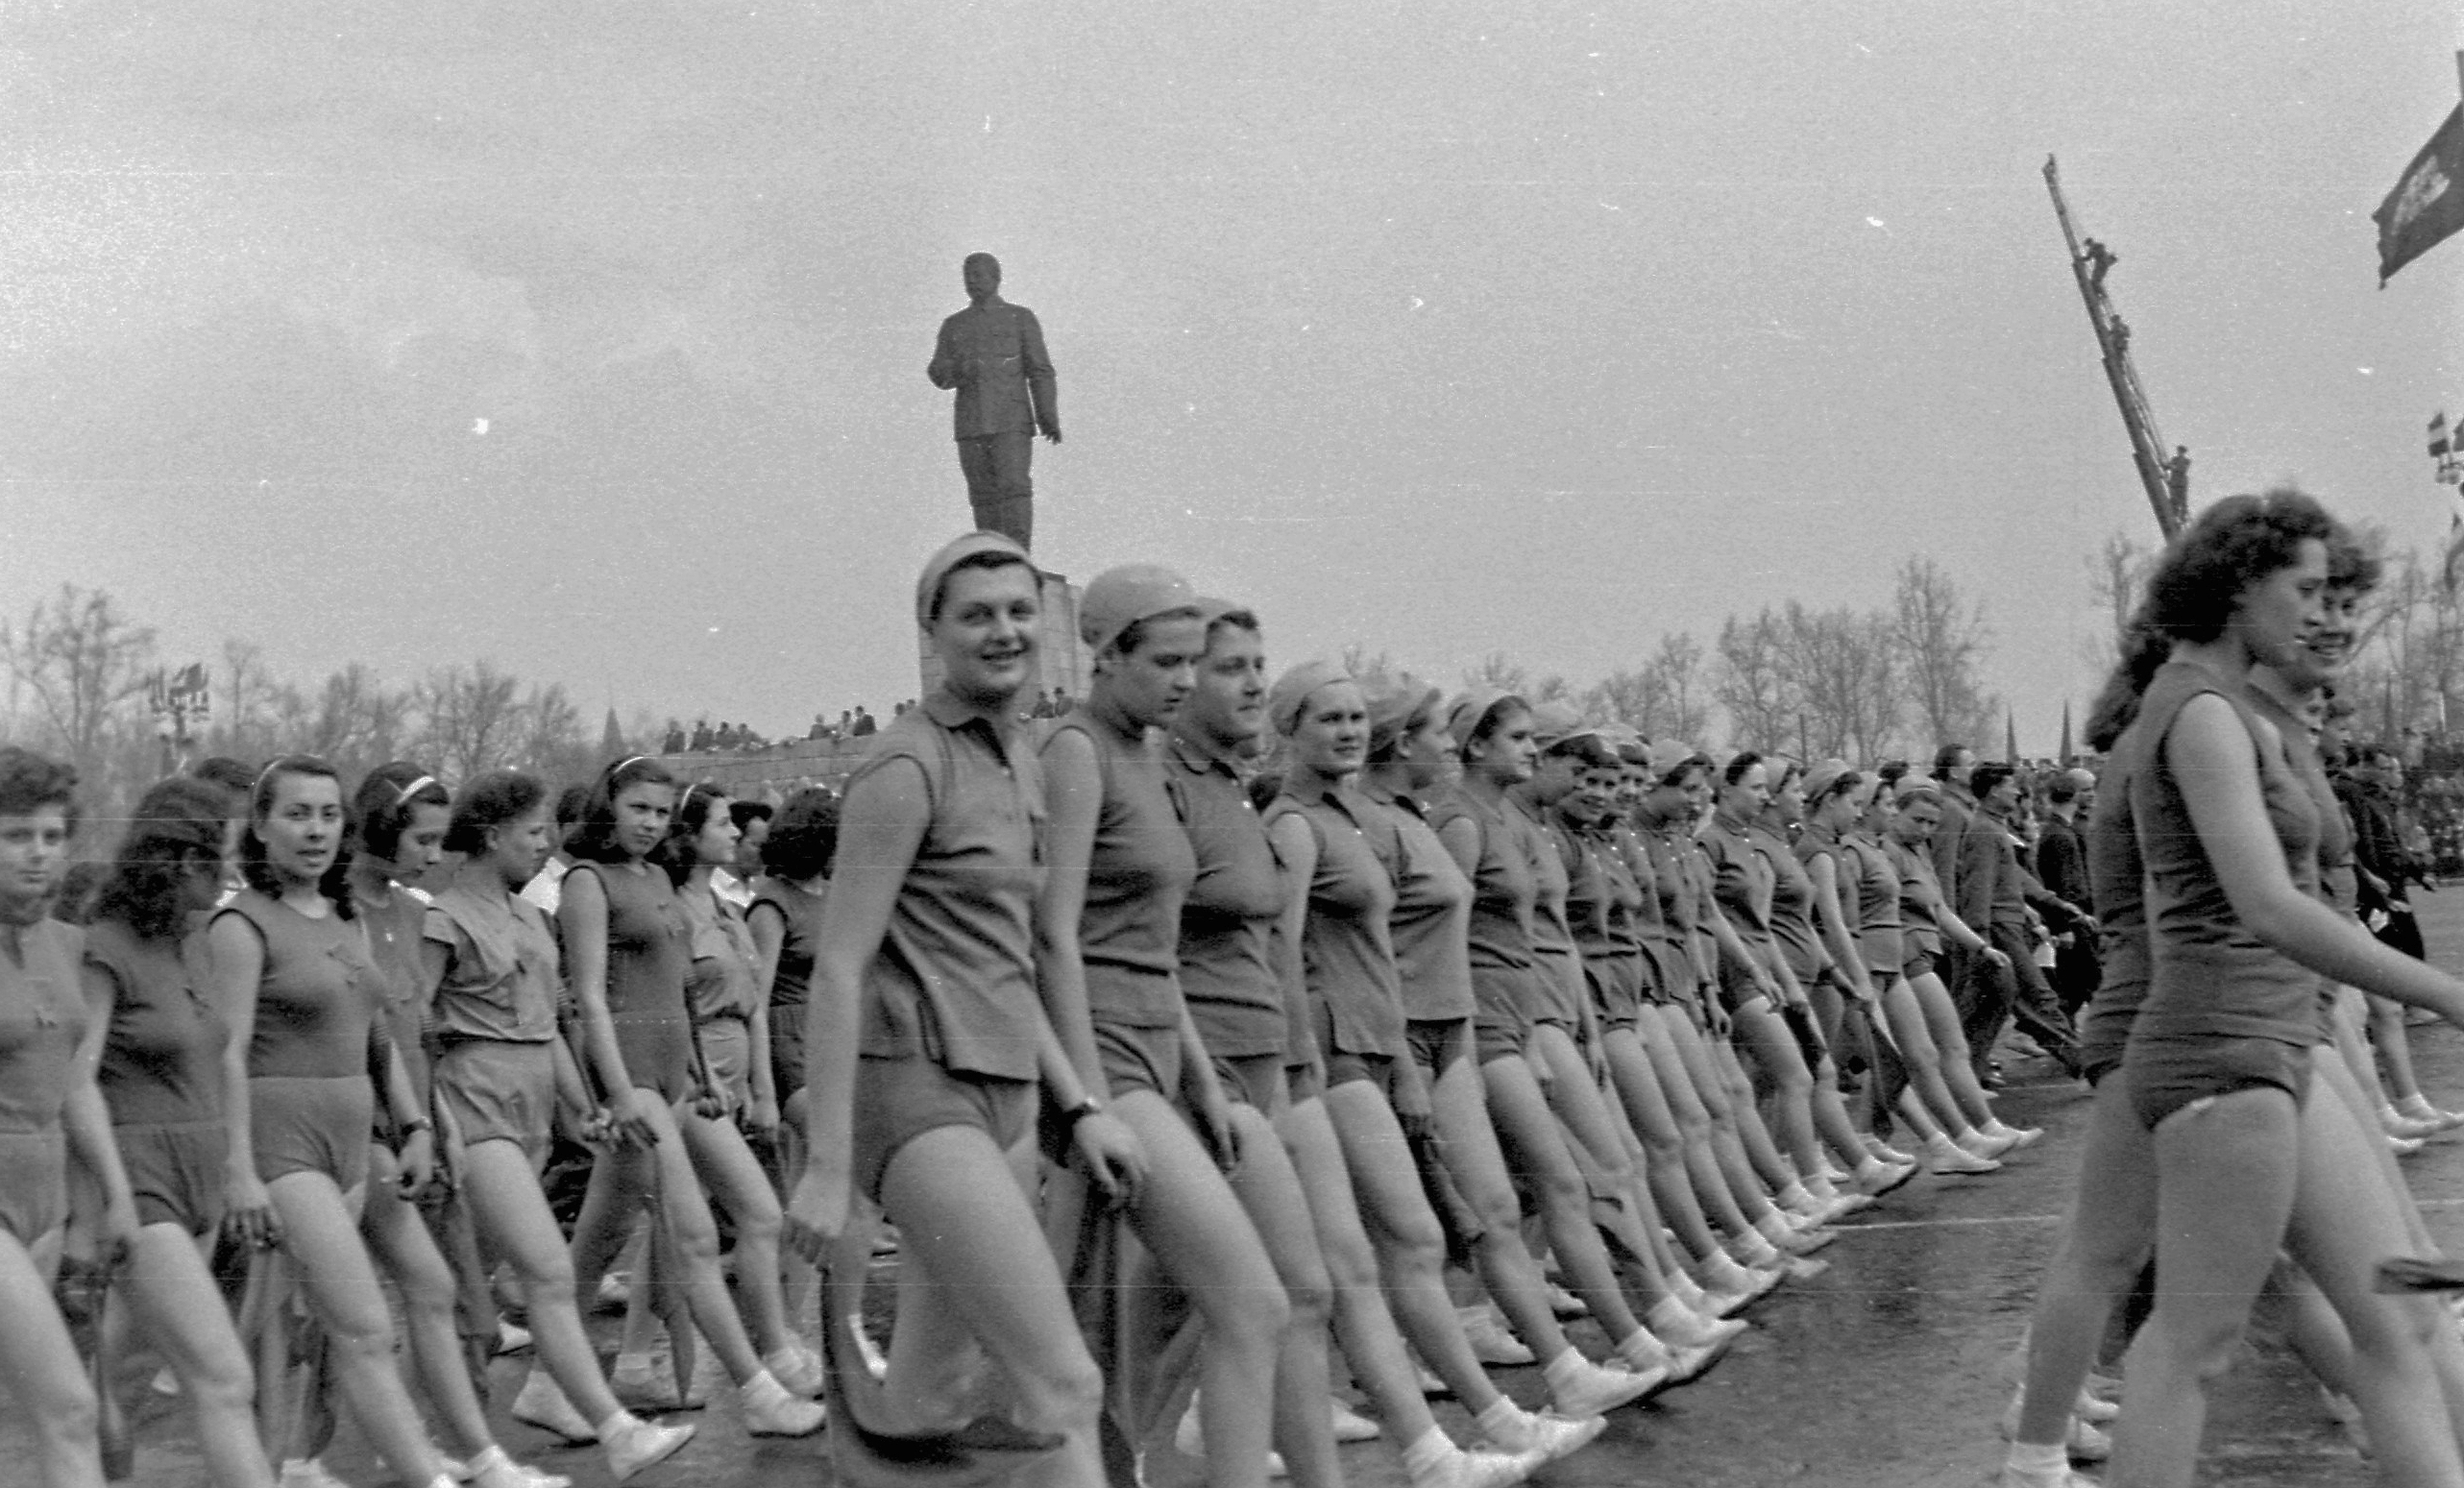 Sztálin-szobor, fürdőruhás nők, üres tyúkketrecek – így vonult fel Magyarország a Rákosi-korszakban